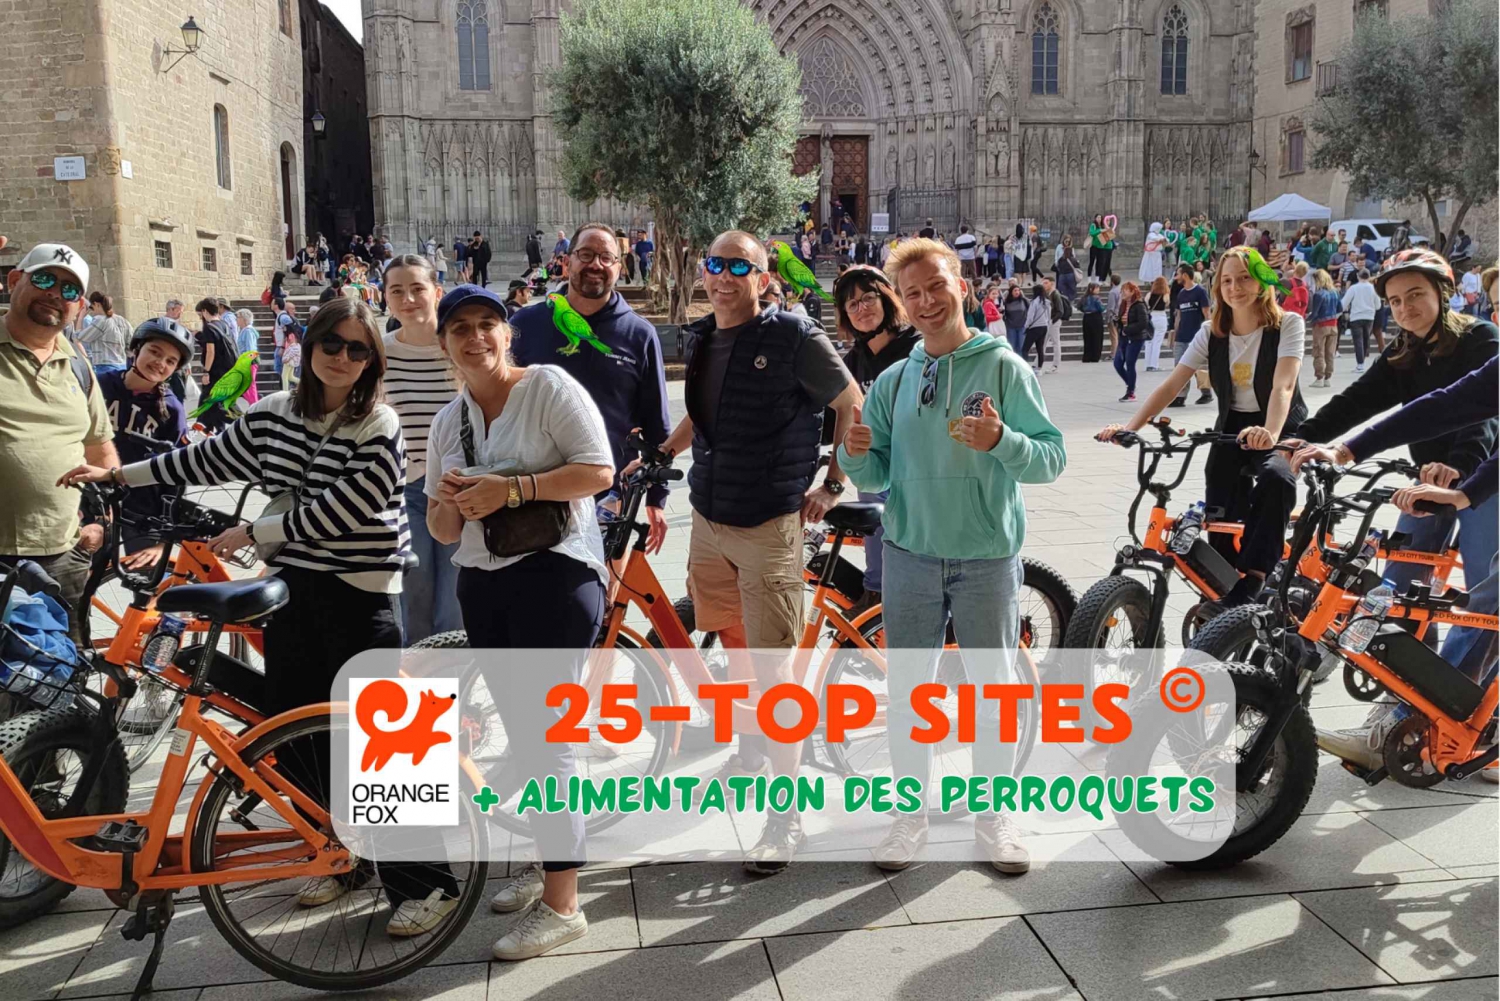 Barcelona Tour💕 con guía francés 25-тop sitios, bici/ebike